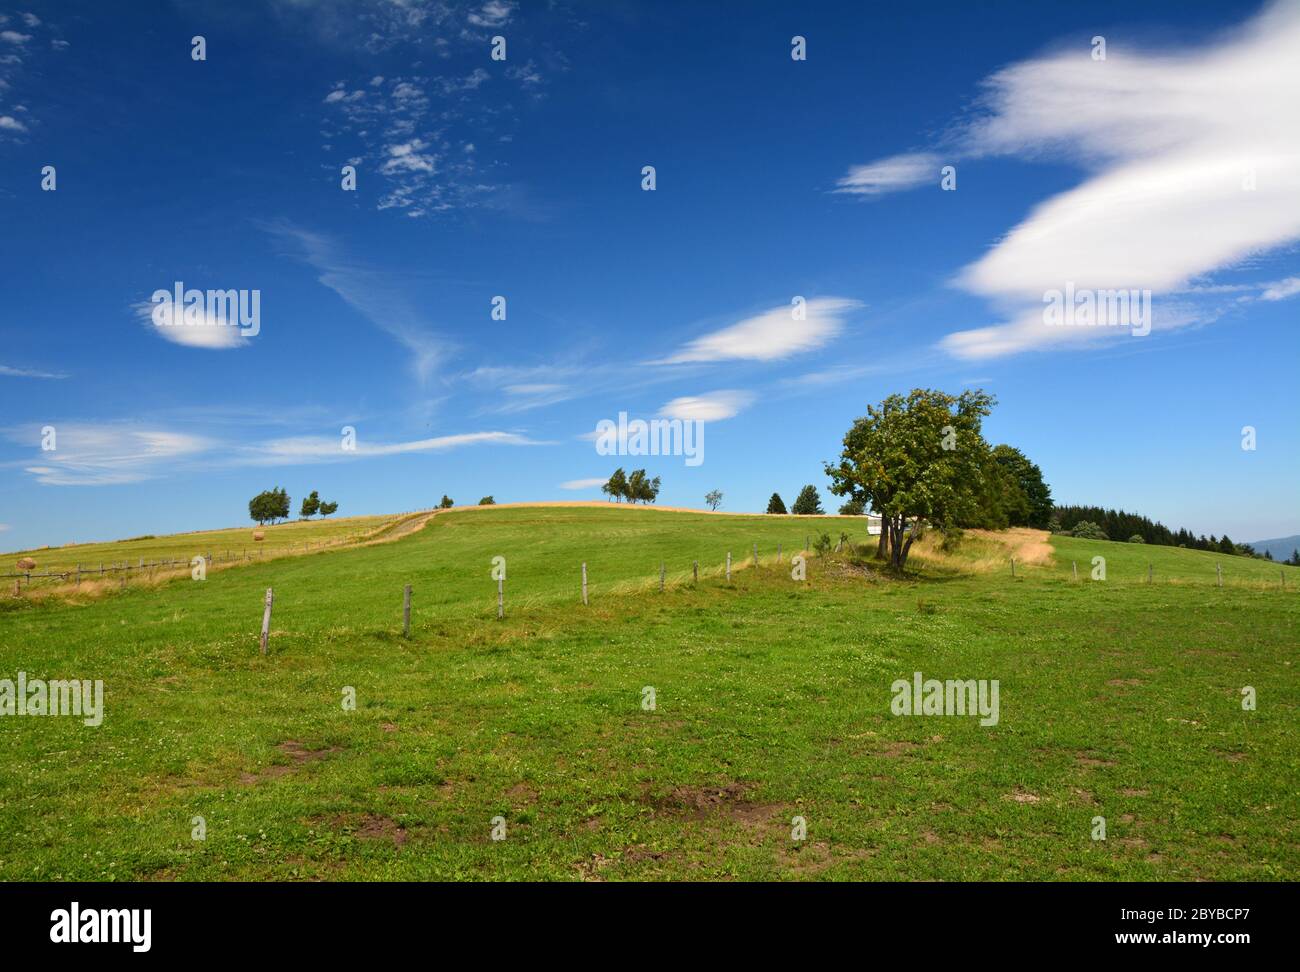 Scenic rural landscape in Poland Stock Photo